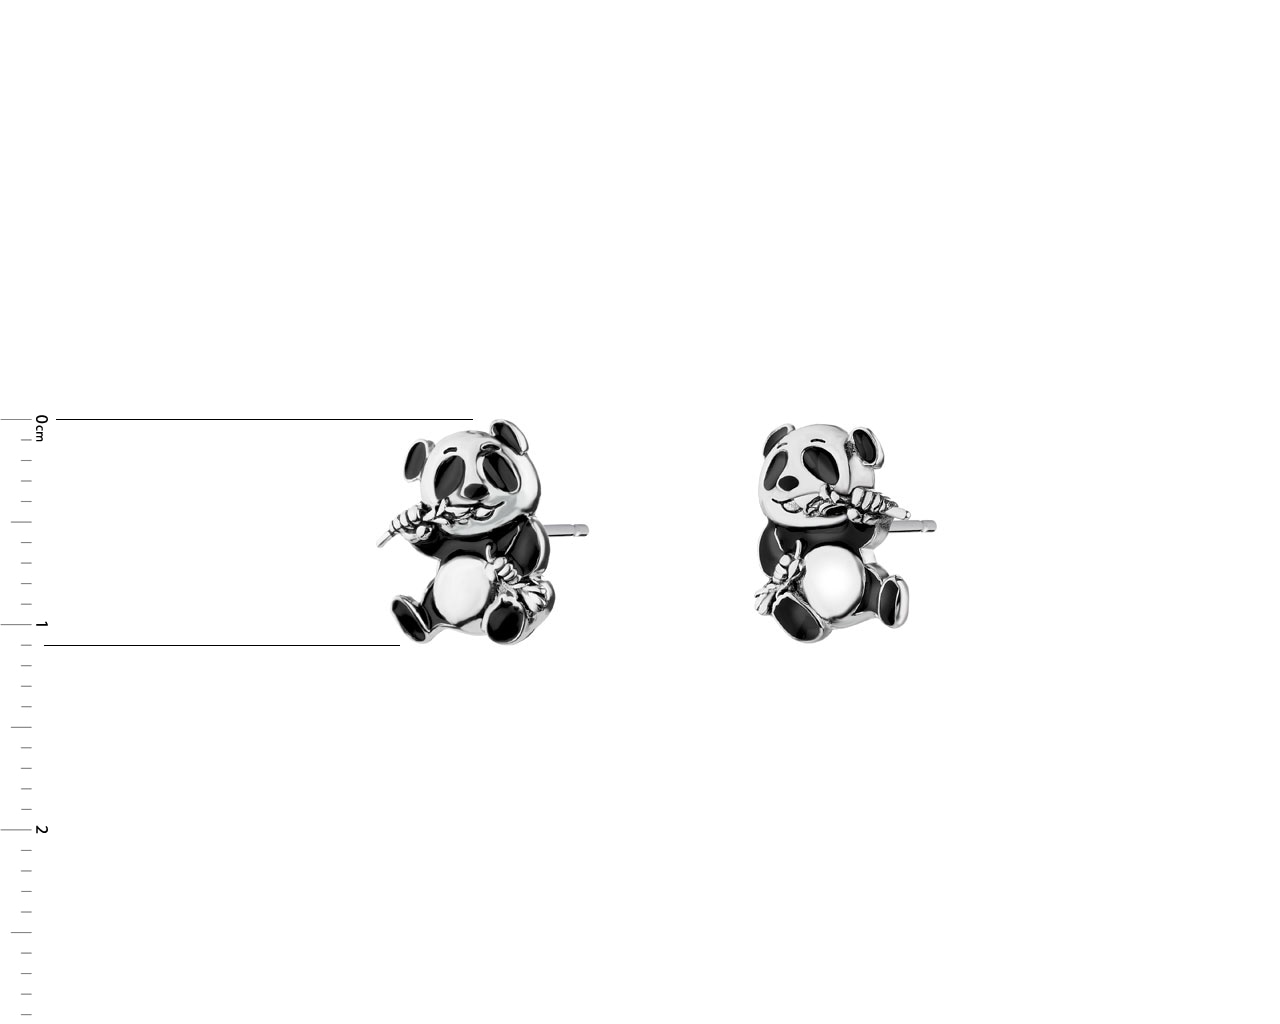 Kolczyki srebrne z emalią - panda